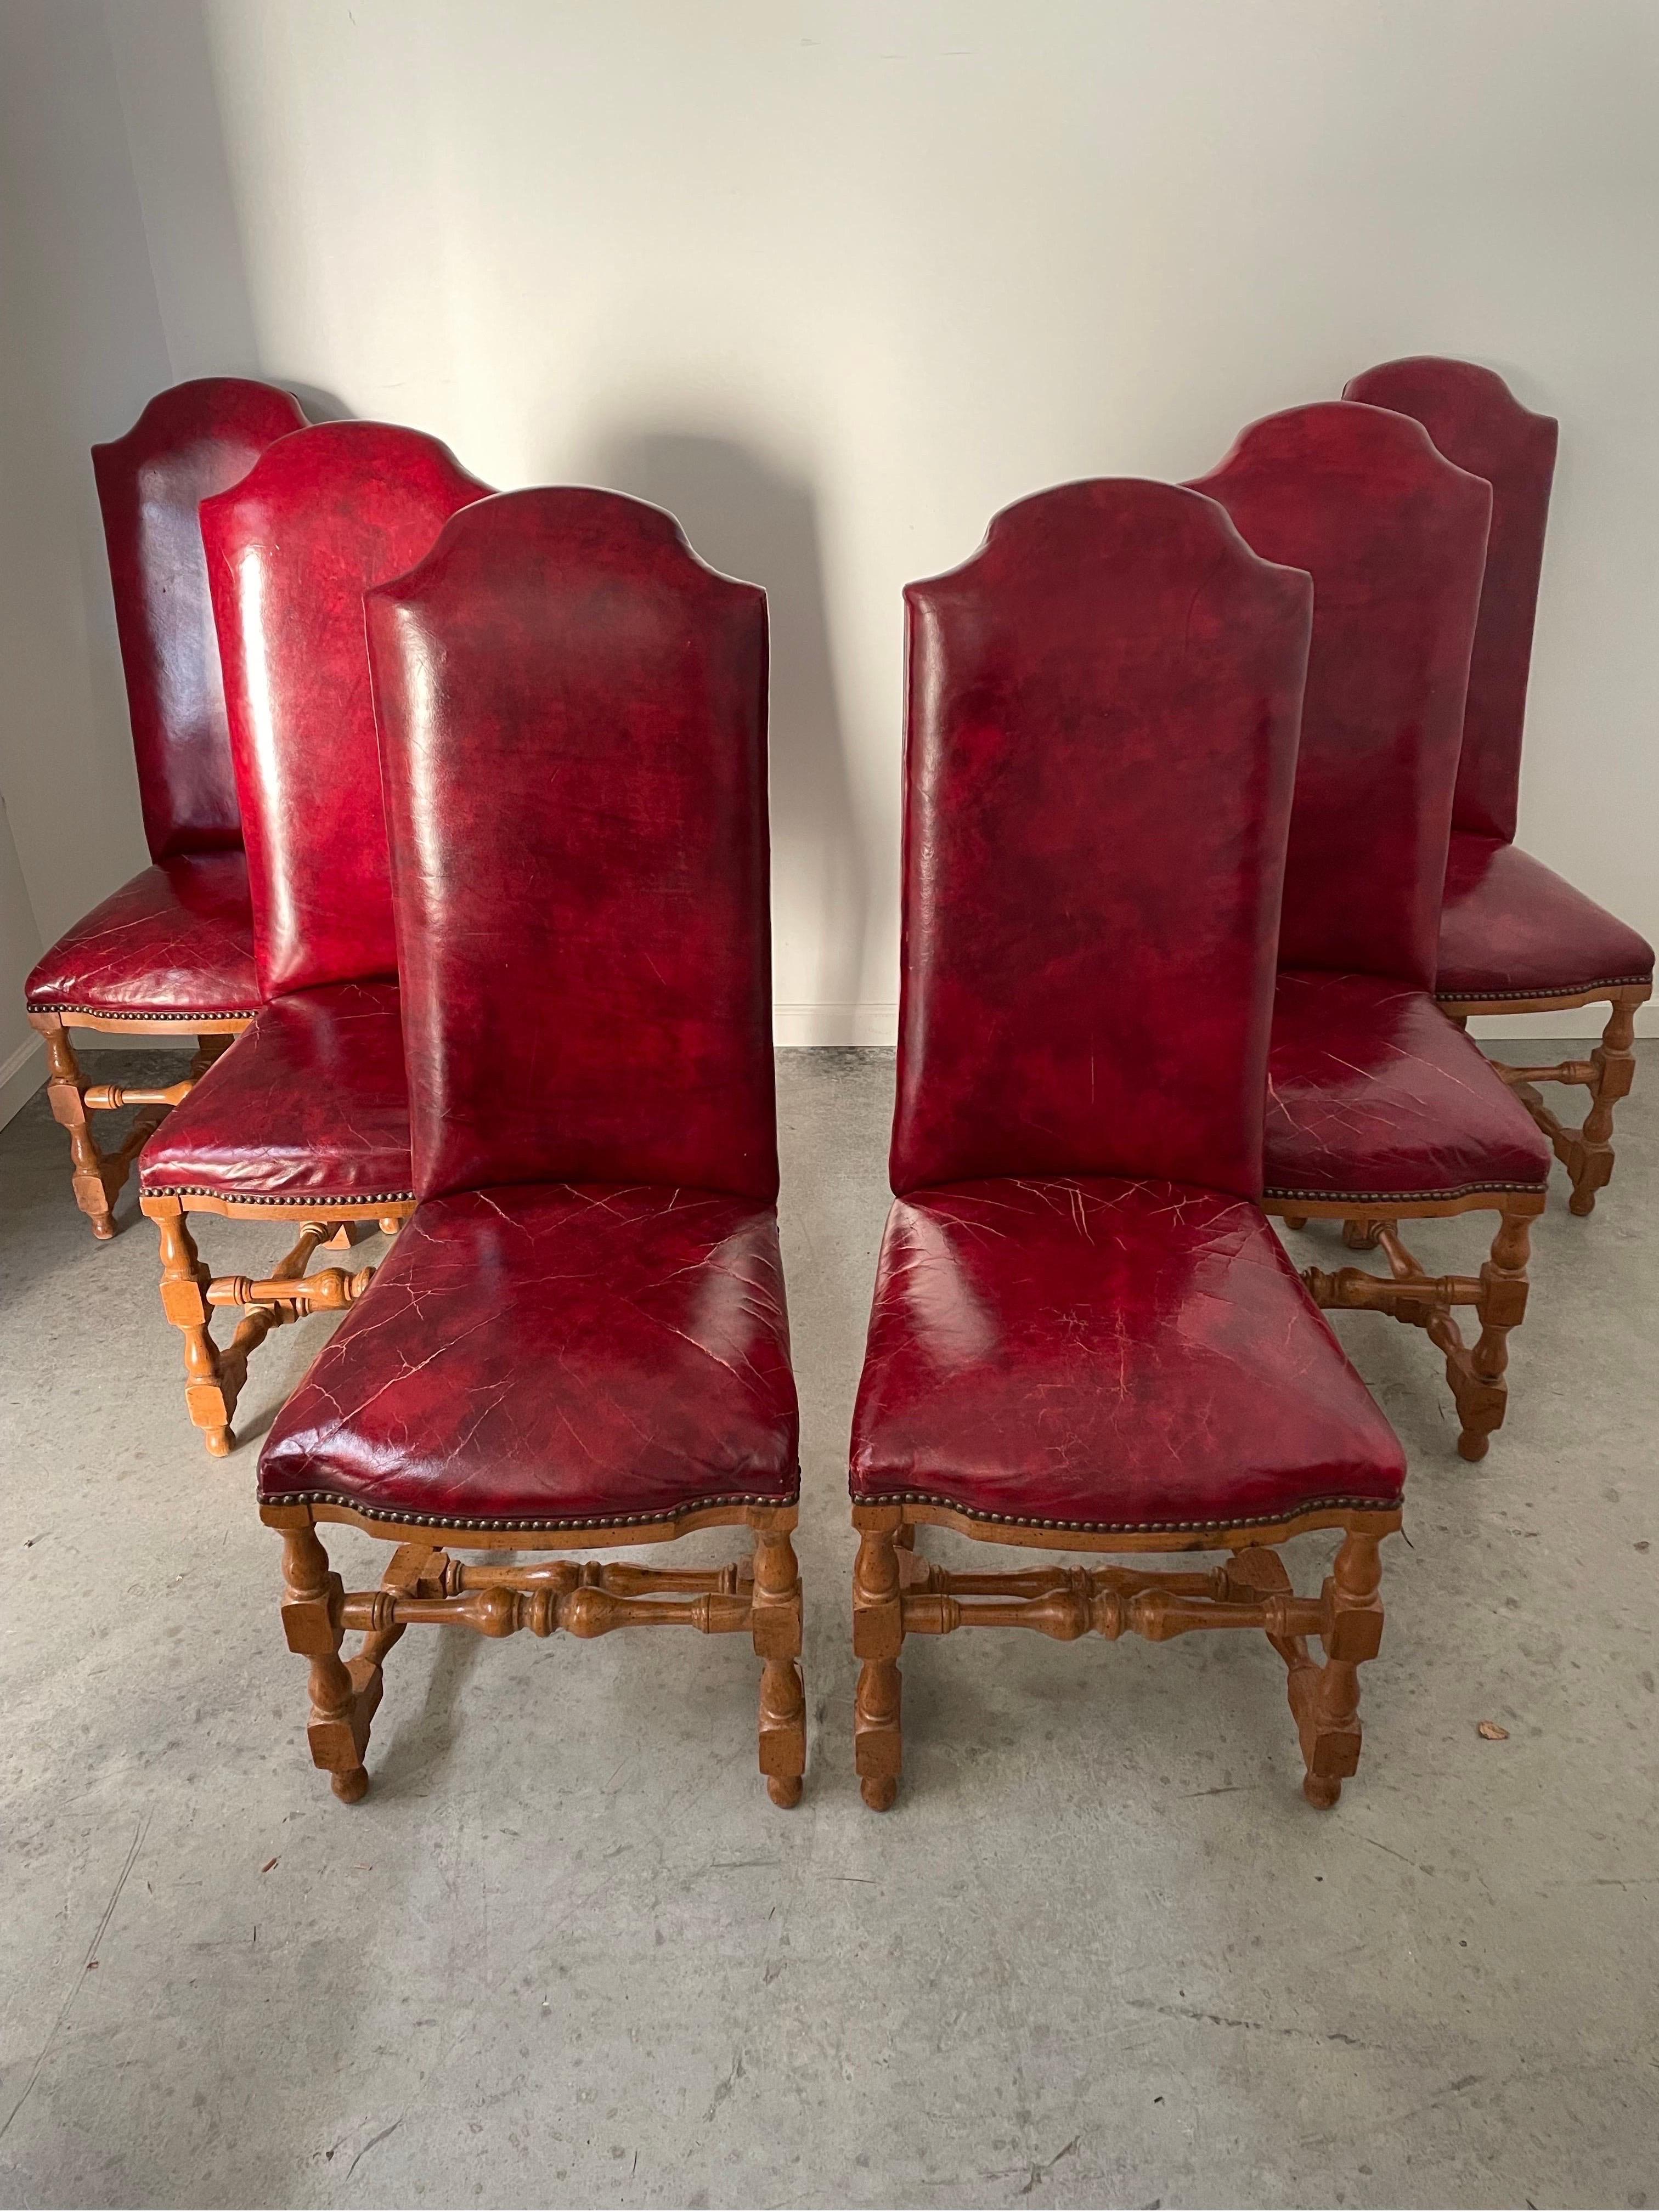 Satz von 6 Esszimmerstühlen im Louis-Xiii-Stil aus der Mitte des Jahrhunderts. Rotes Leder und Nieten.

15.5w x 46 